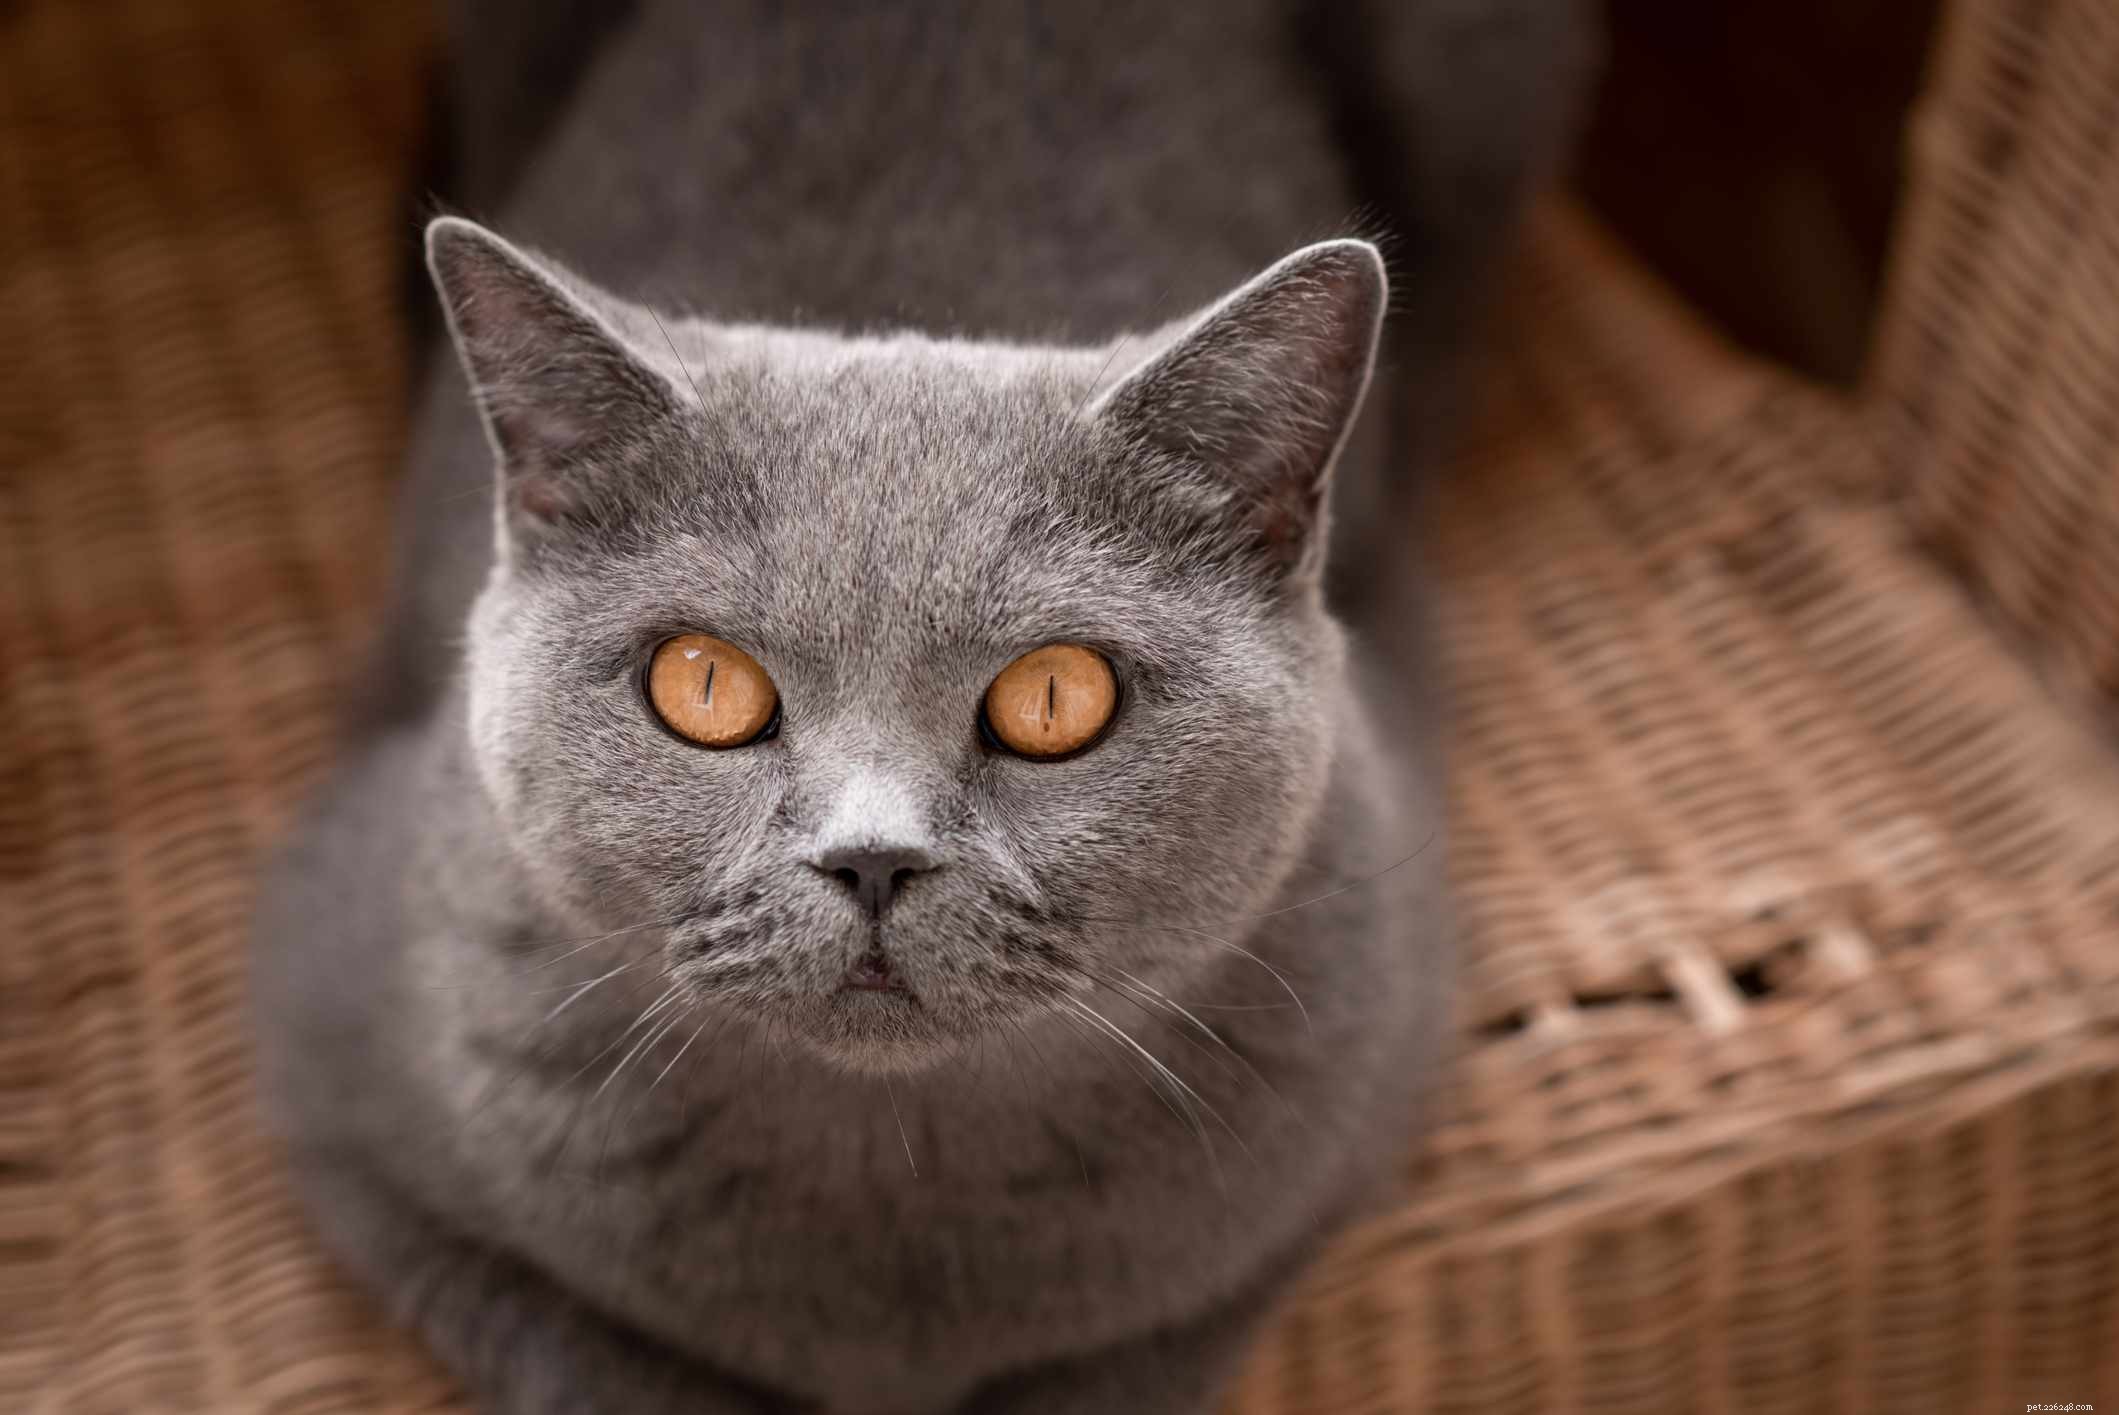 15 migliori razze di gatti con occhi grandi